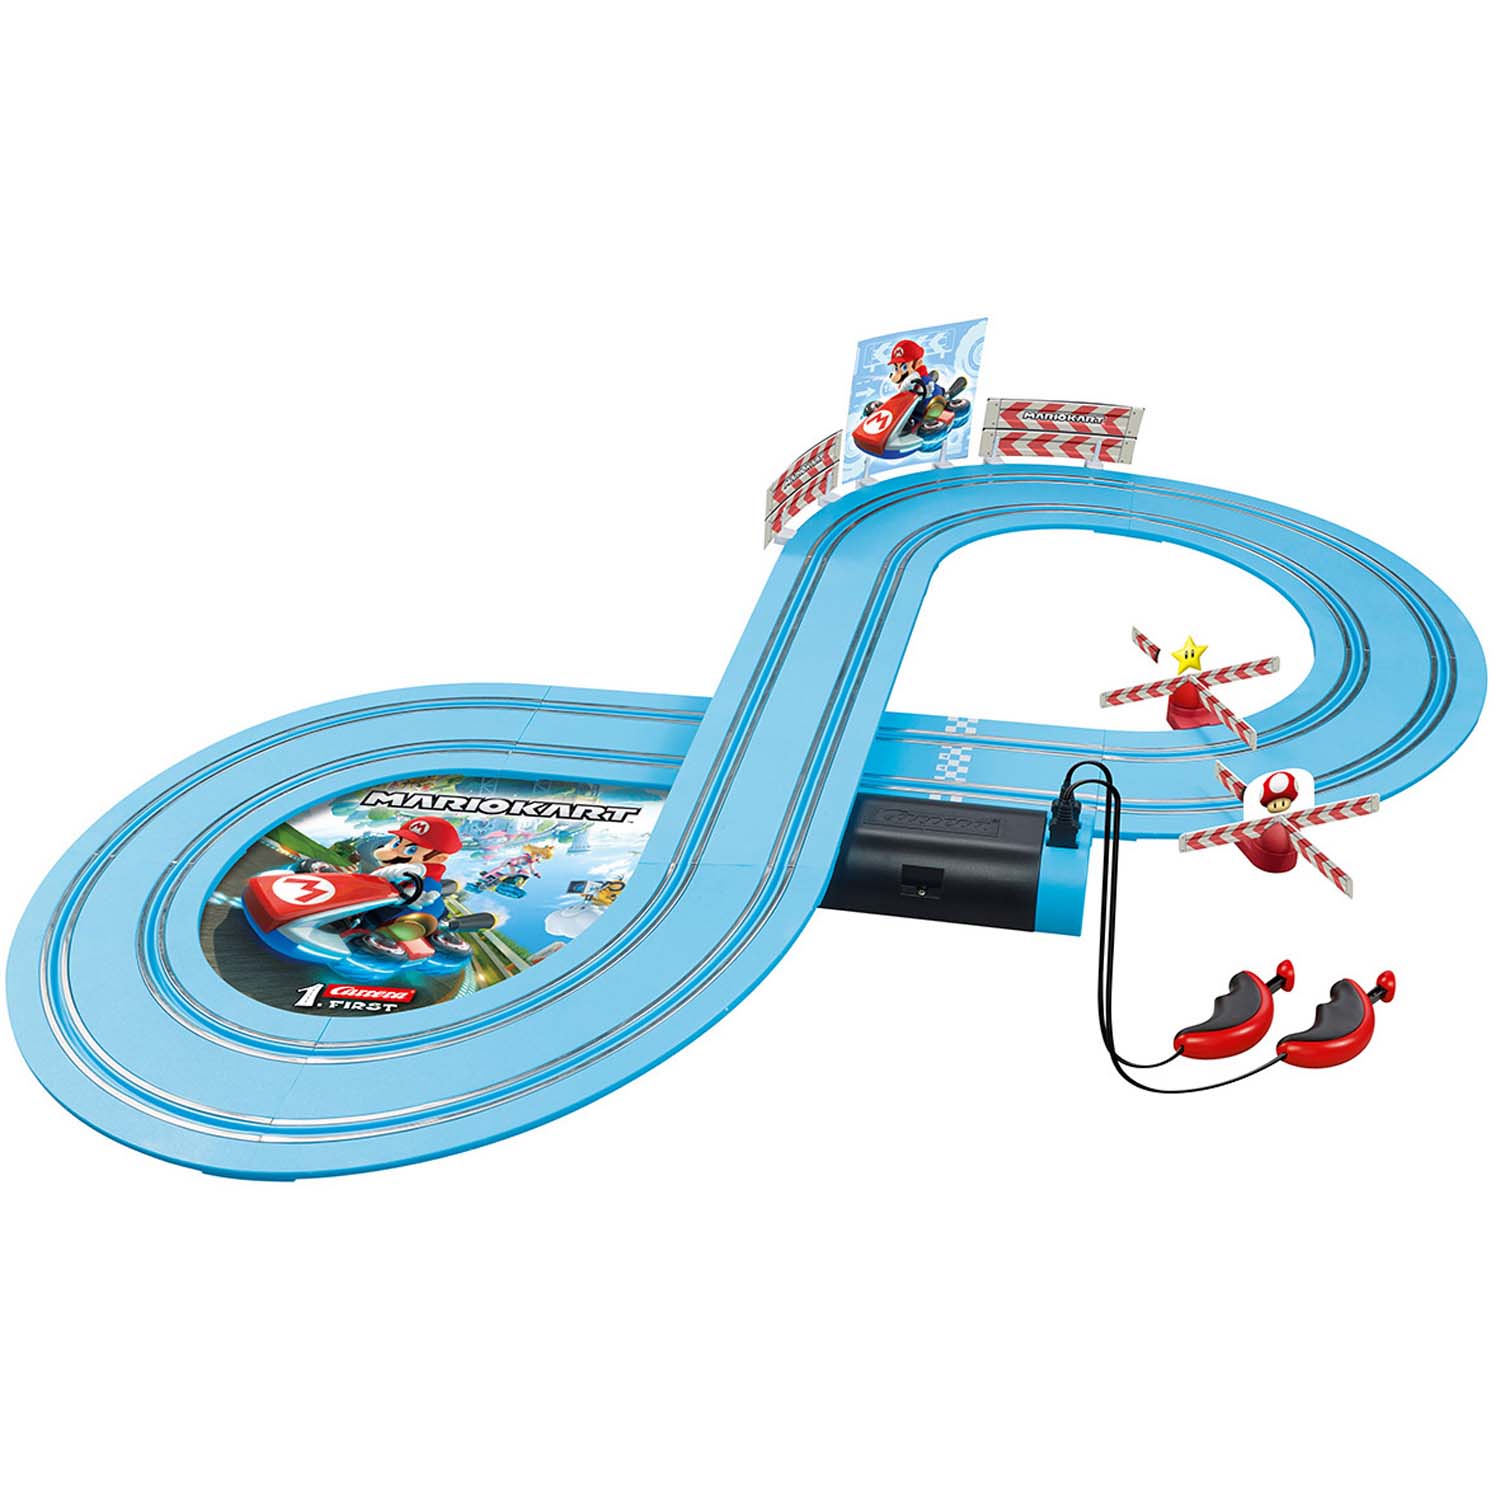 Super Mario Racecourse Mariokart 2.4m